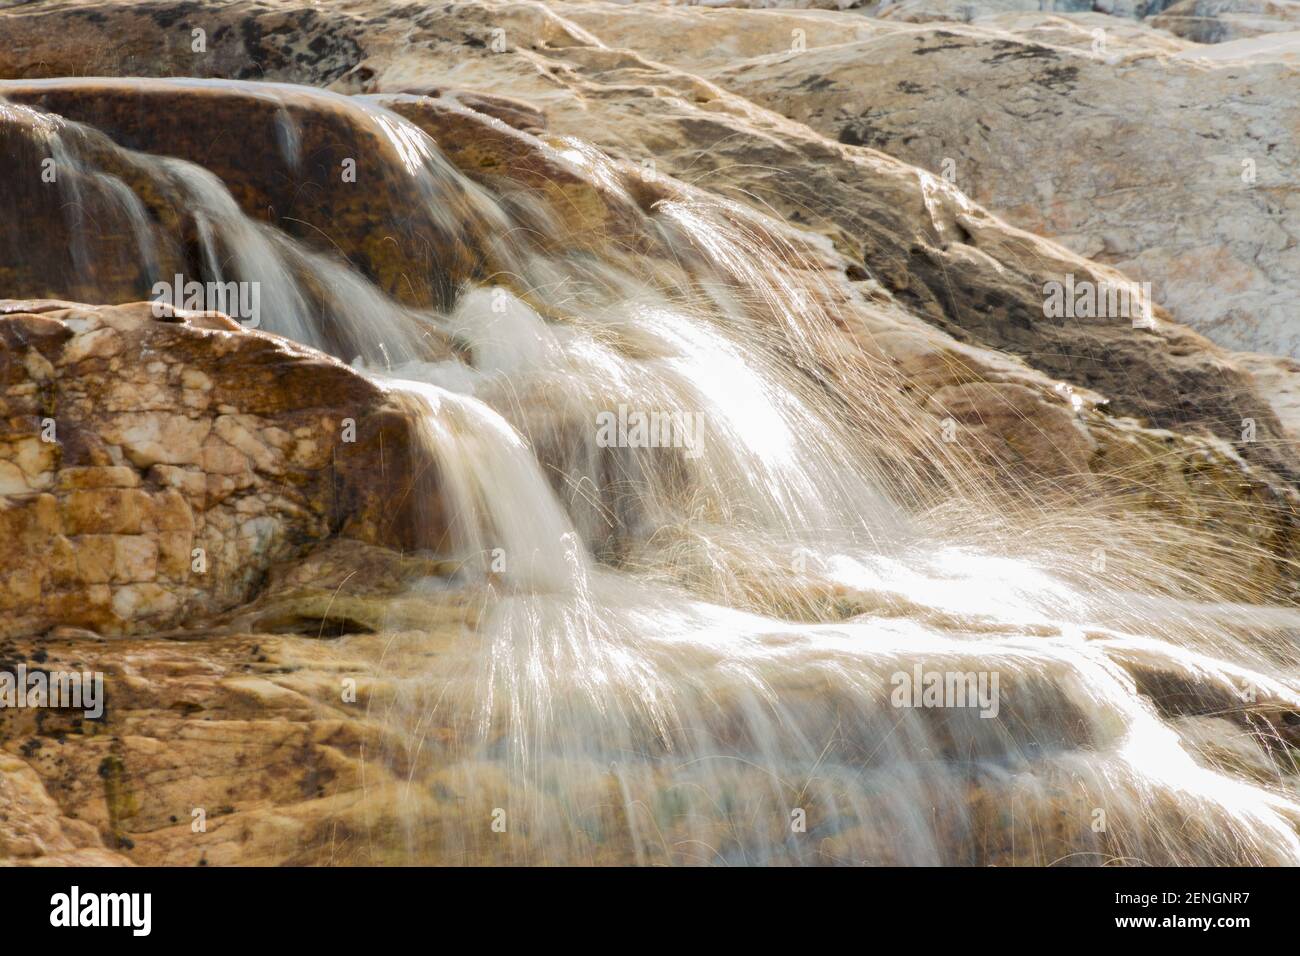 Foto de agua blanda tomada en un río casi seco cerca de Botumirim en Minas Gerais, Brasil Foto de stock